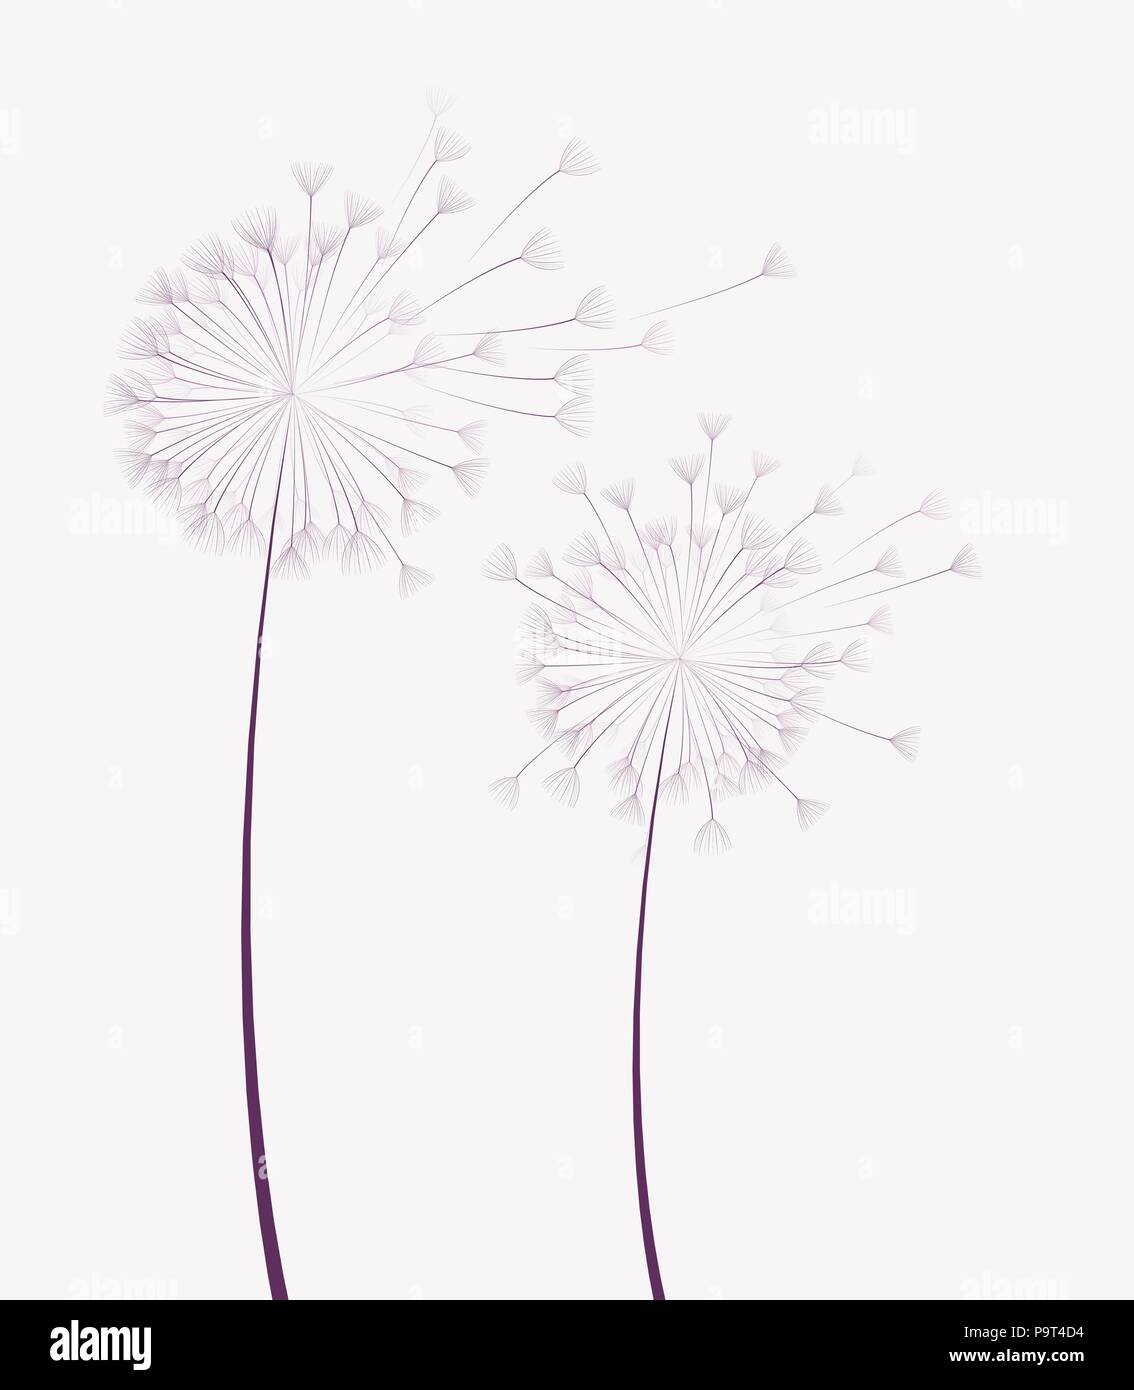 Vector illustration of dandelion flower in motion Stock Vector